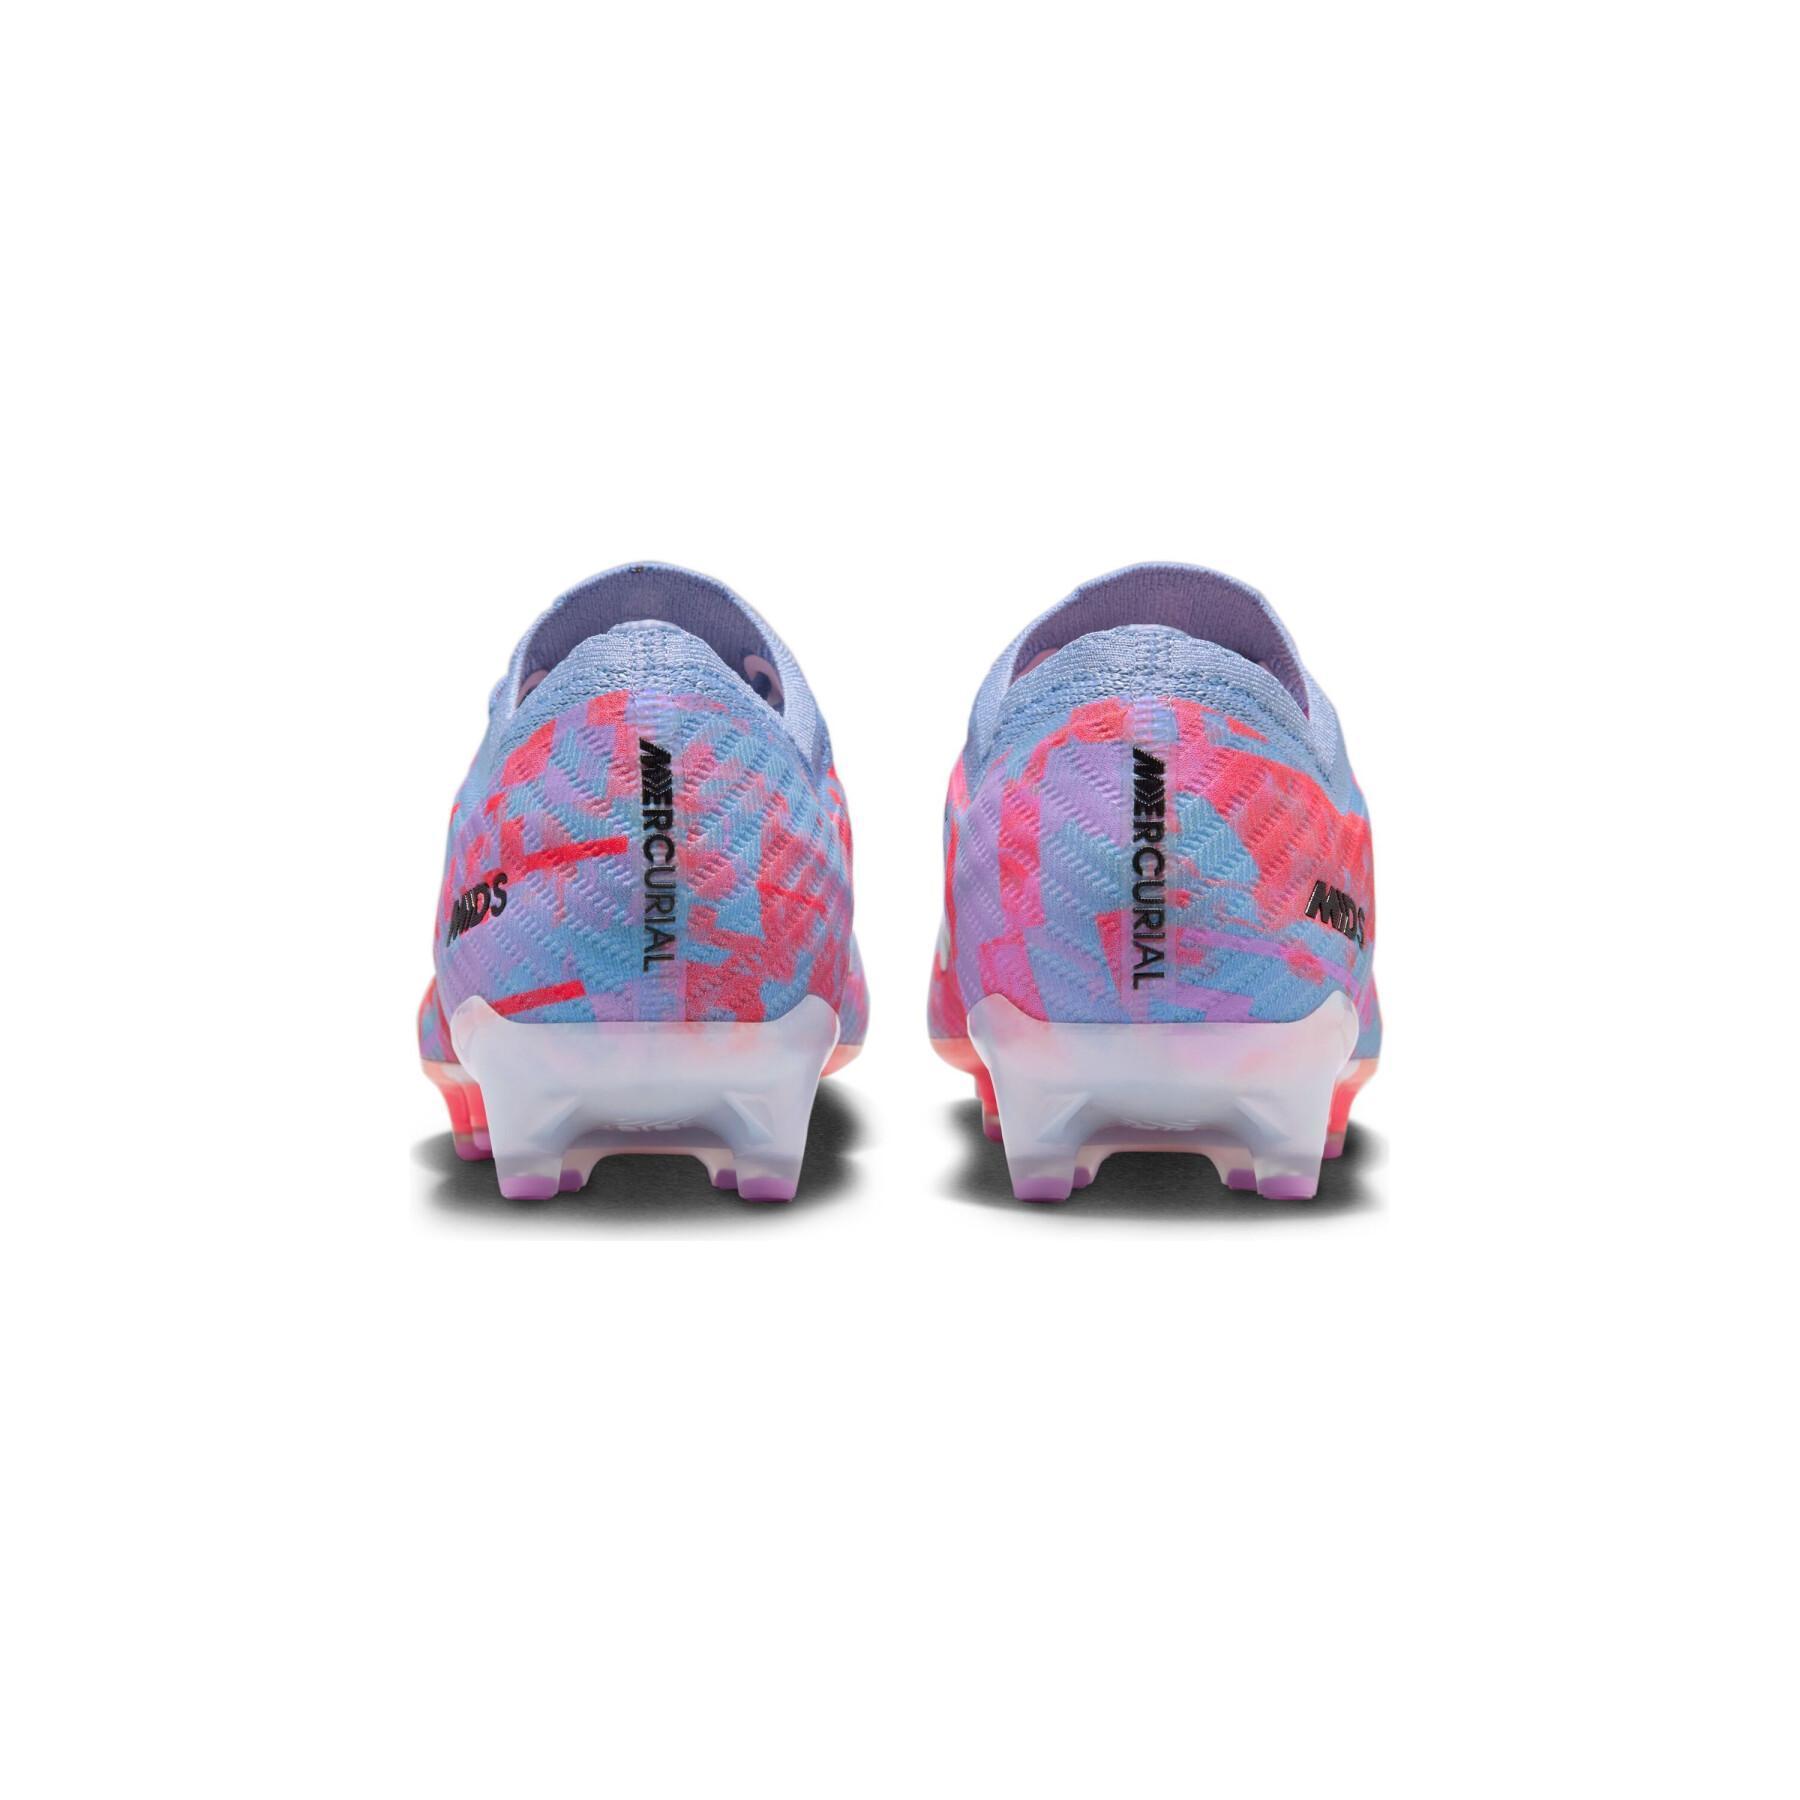 Buty piłkarskie Nike Mercurial Vapor 15 Elite AG/PRO - MDS pack